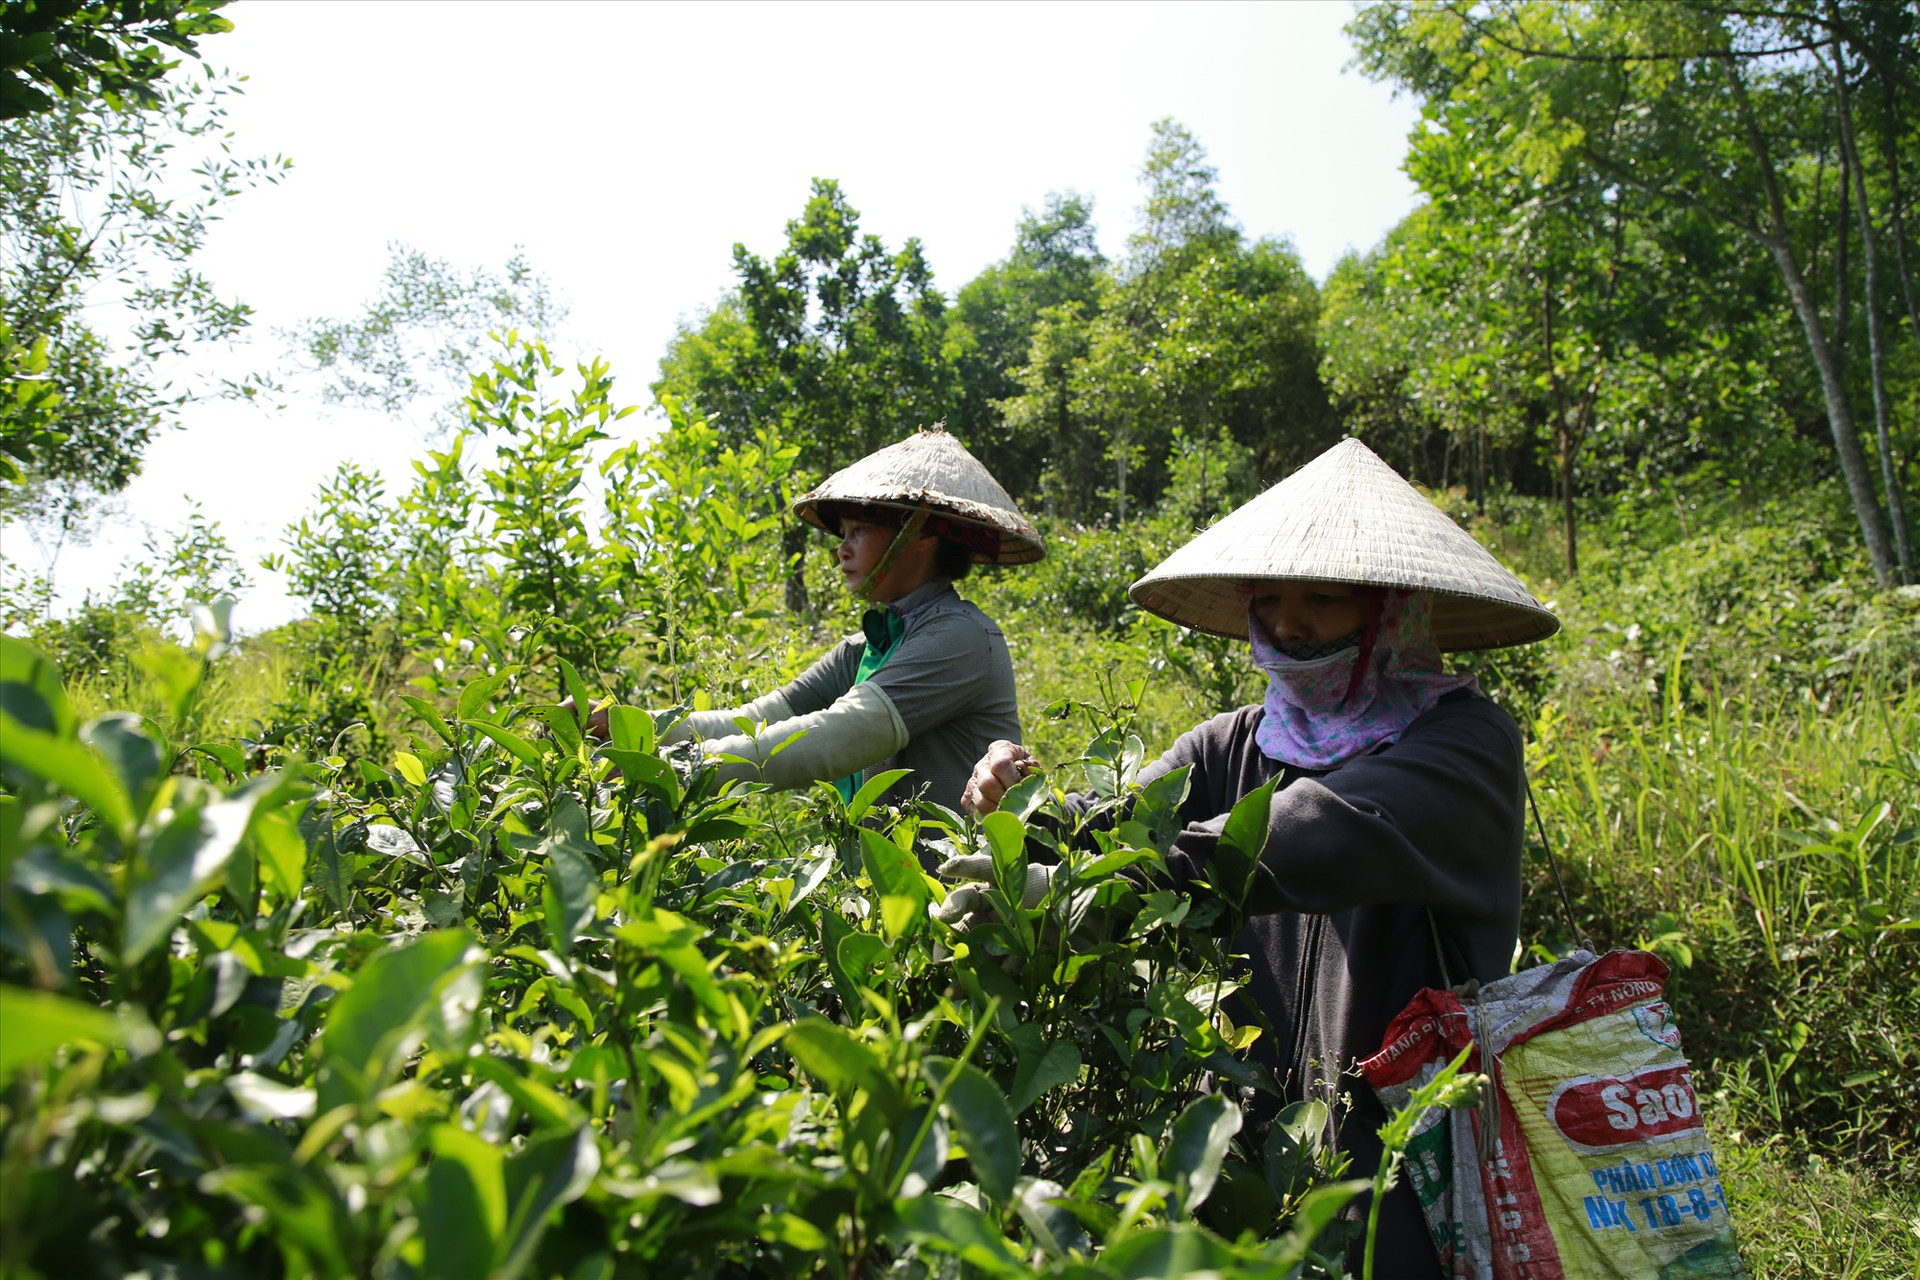 Mô hình trồng chè ở Hợp tác xã Chè Đức Phú hứa hẹn nhiều tiềm năng phát triển kinh tế địa phương. Ảnh: C.H